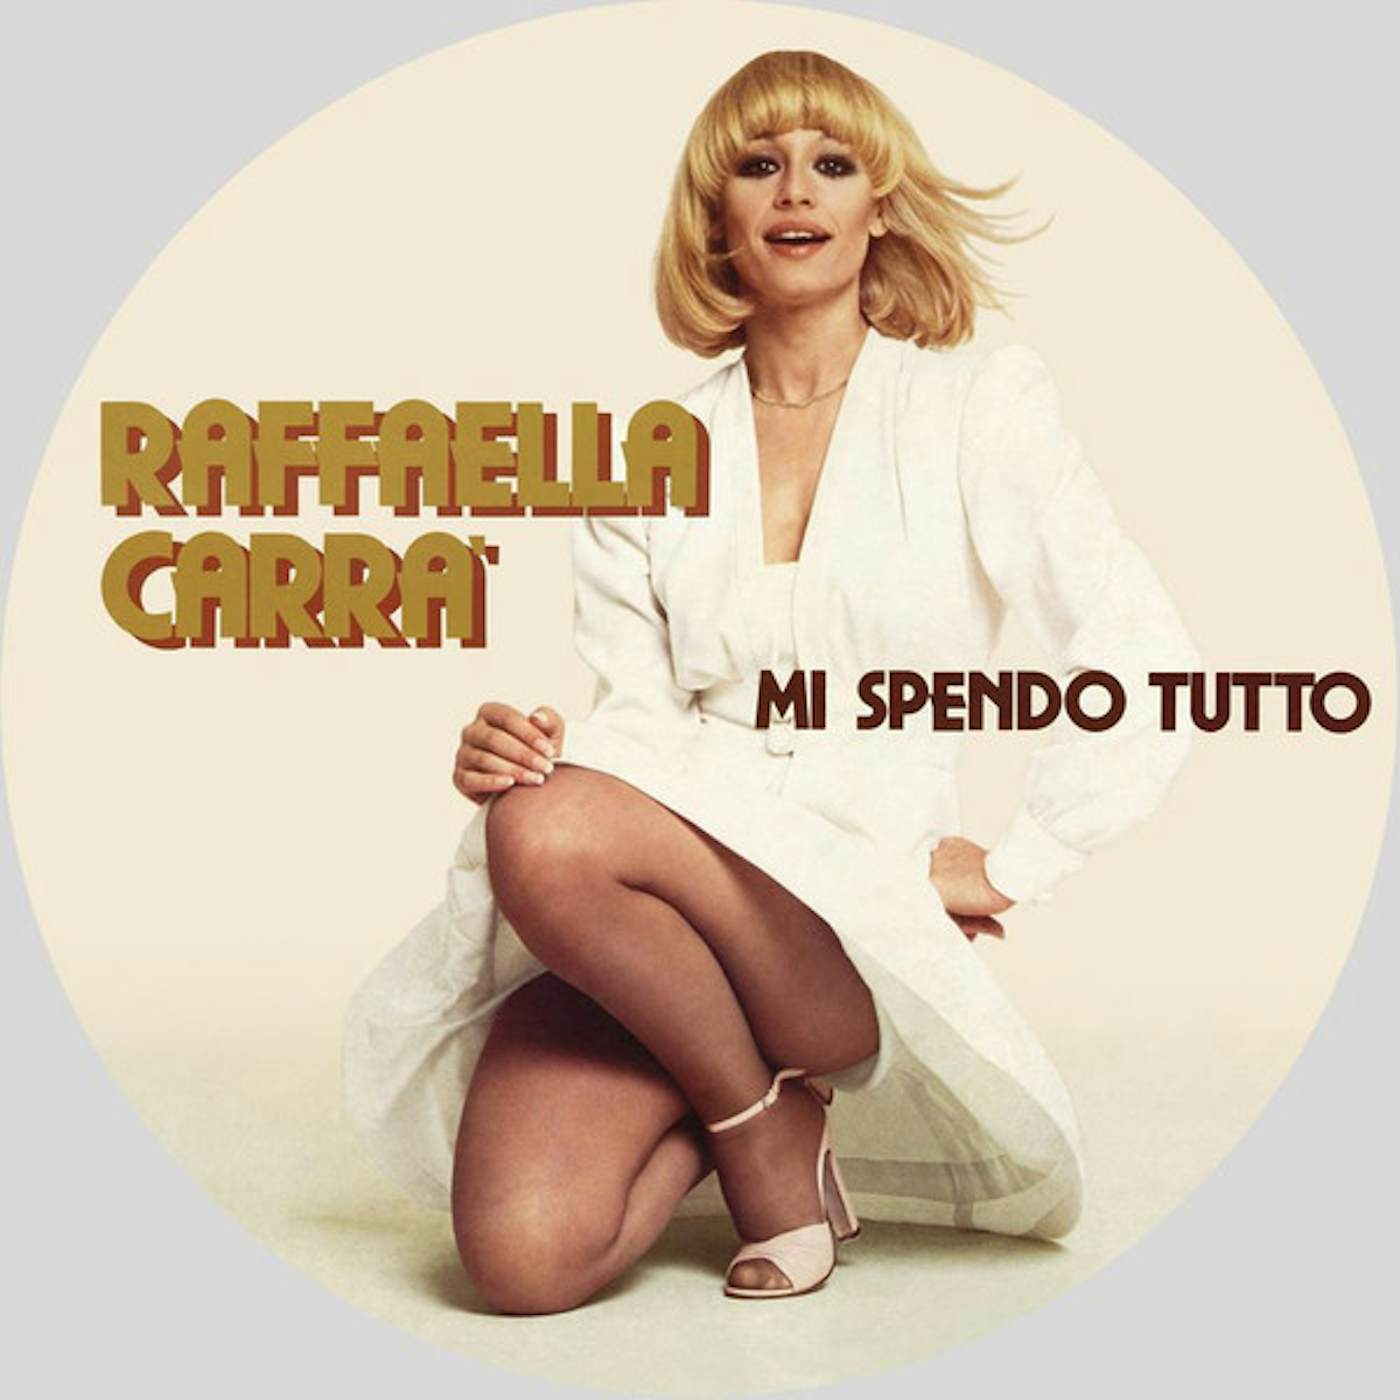 Raffaella Carrà MI SPENDO TUTTO Vinyl Record